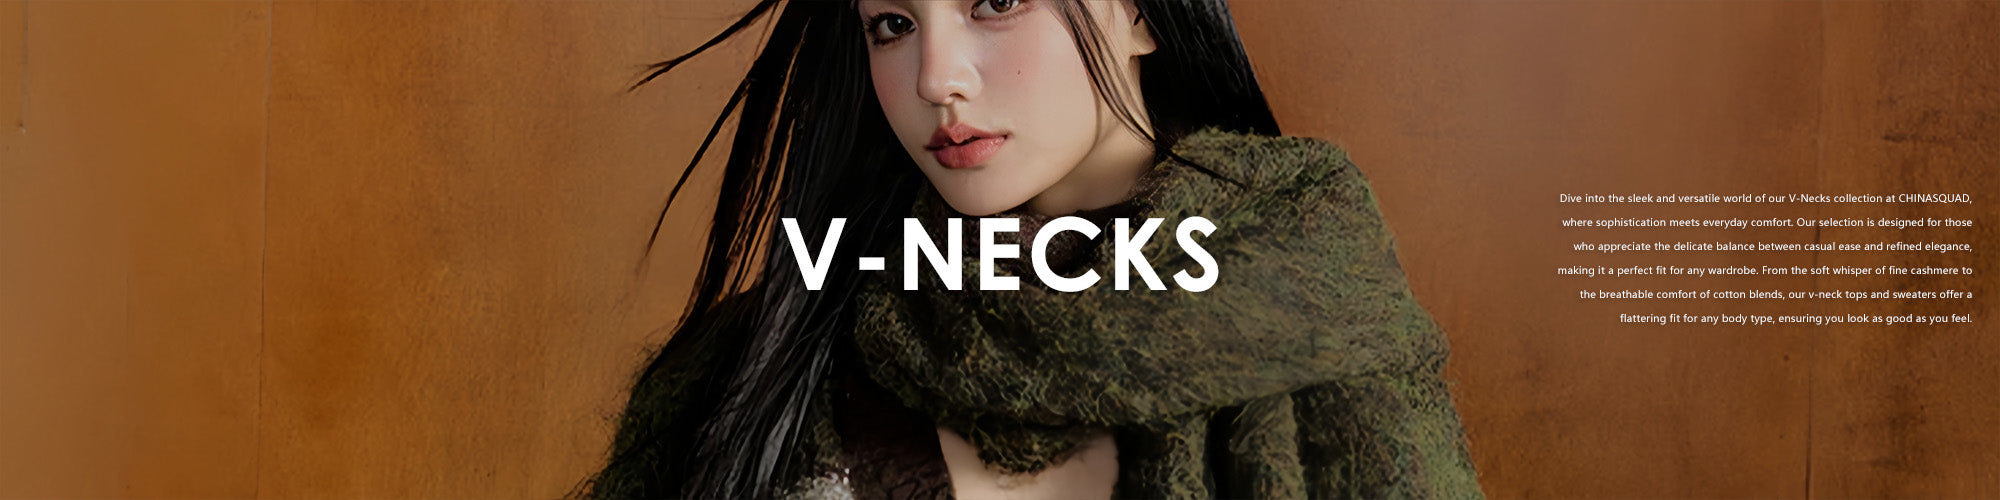 V-necks